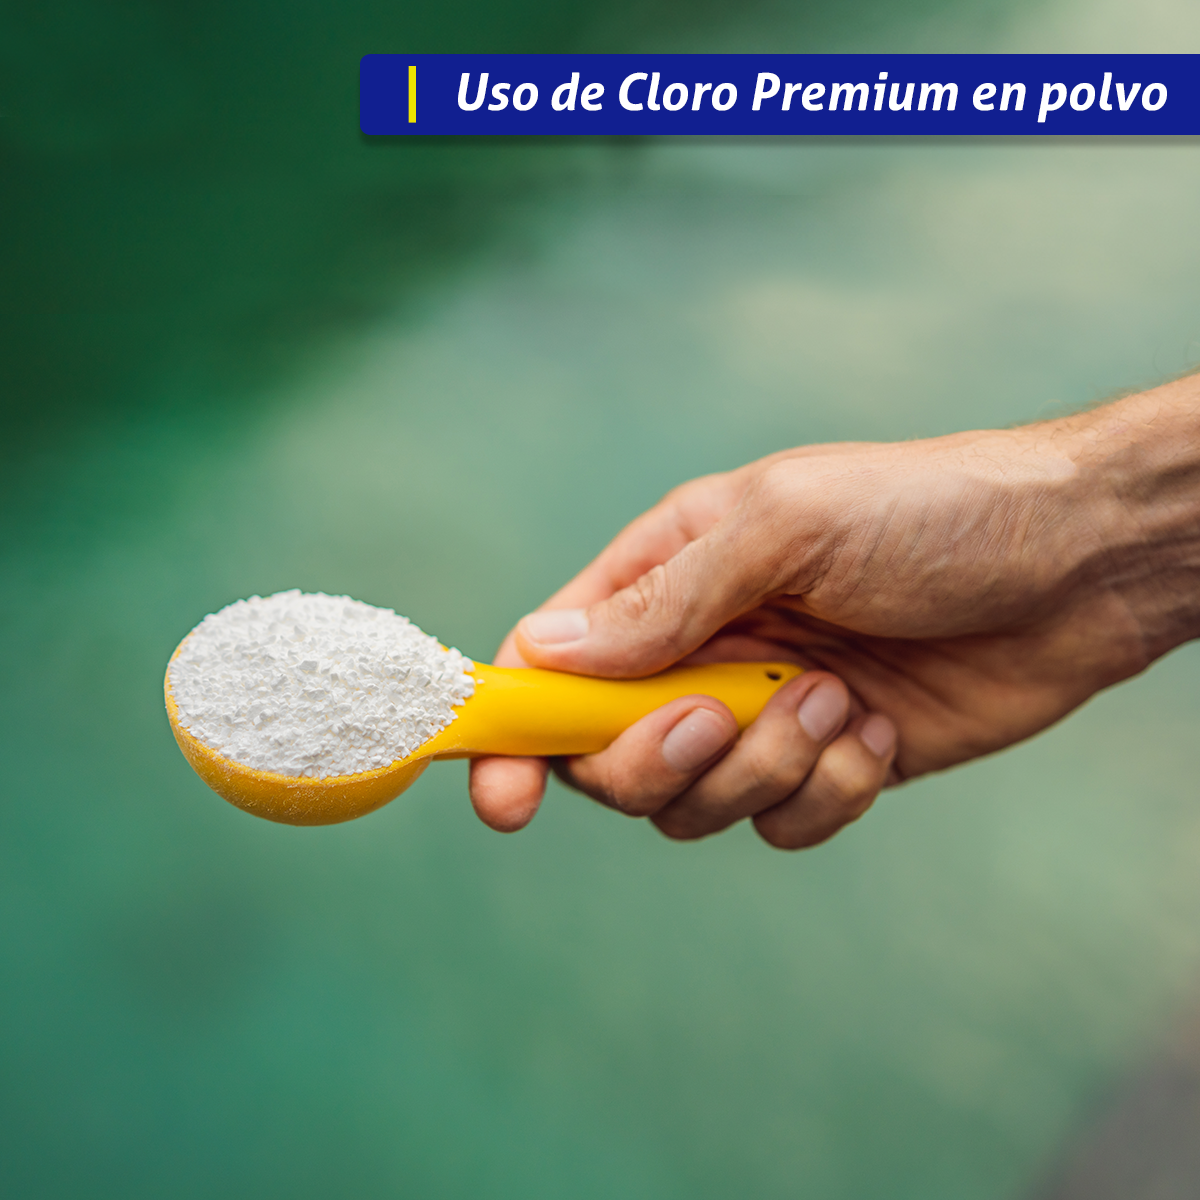 Cloro En Polvo Premium 20kg - 35% Más De Rendimiento!